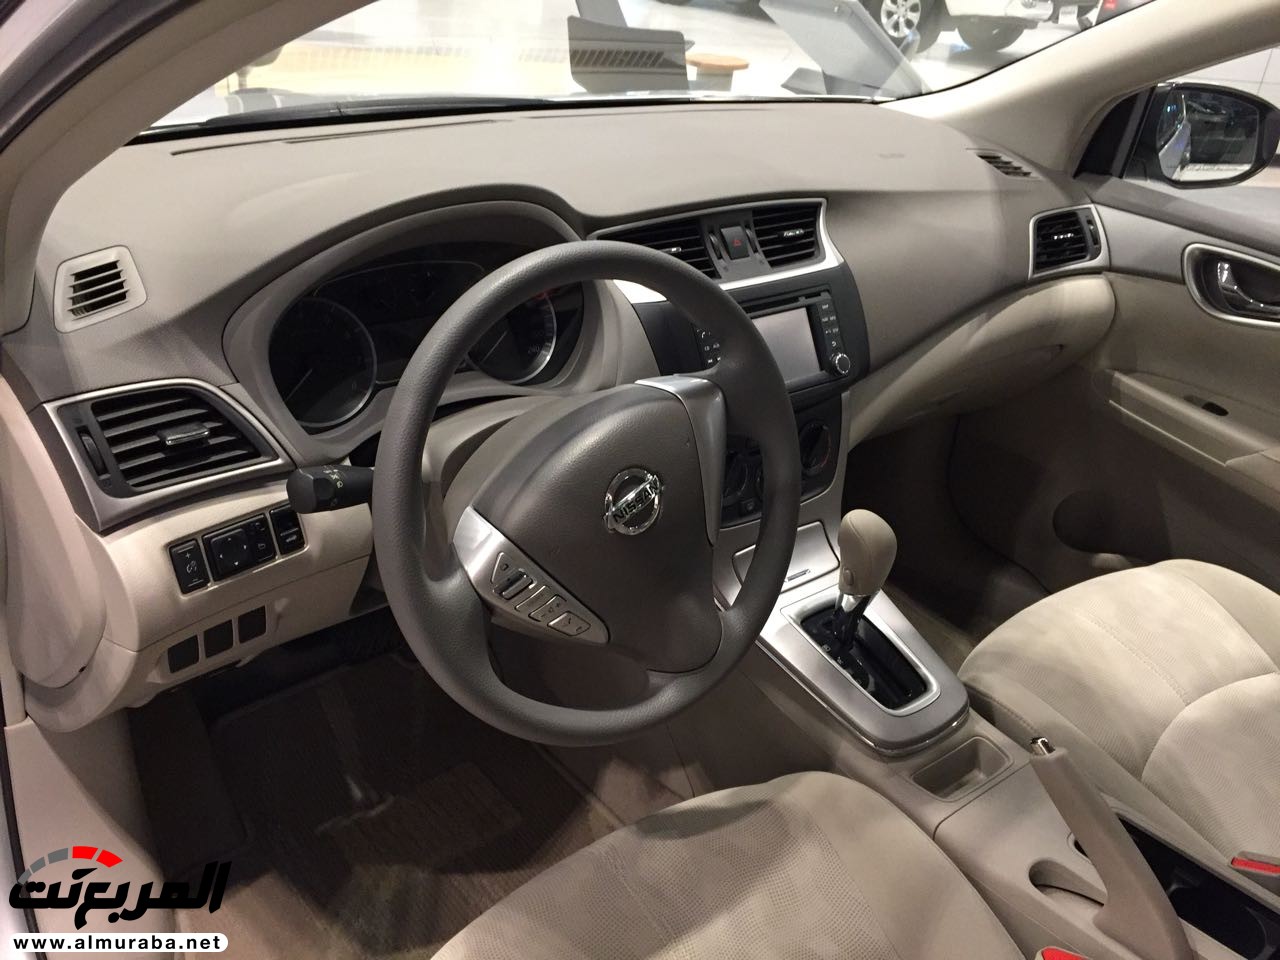 نيسان سنترا 2018 في السعودية لدى العيسى وبترومين + الاسعار والمواصفات لجميع الفئات Nissan Sentra 19